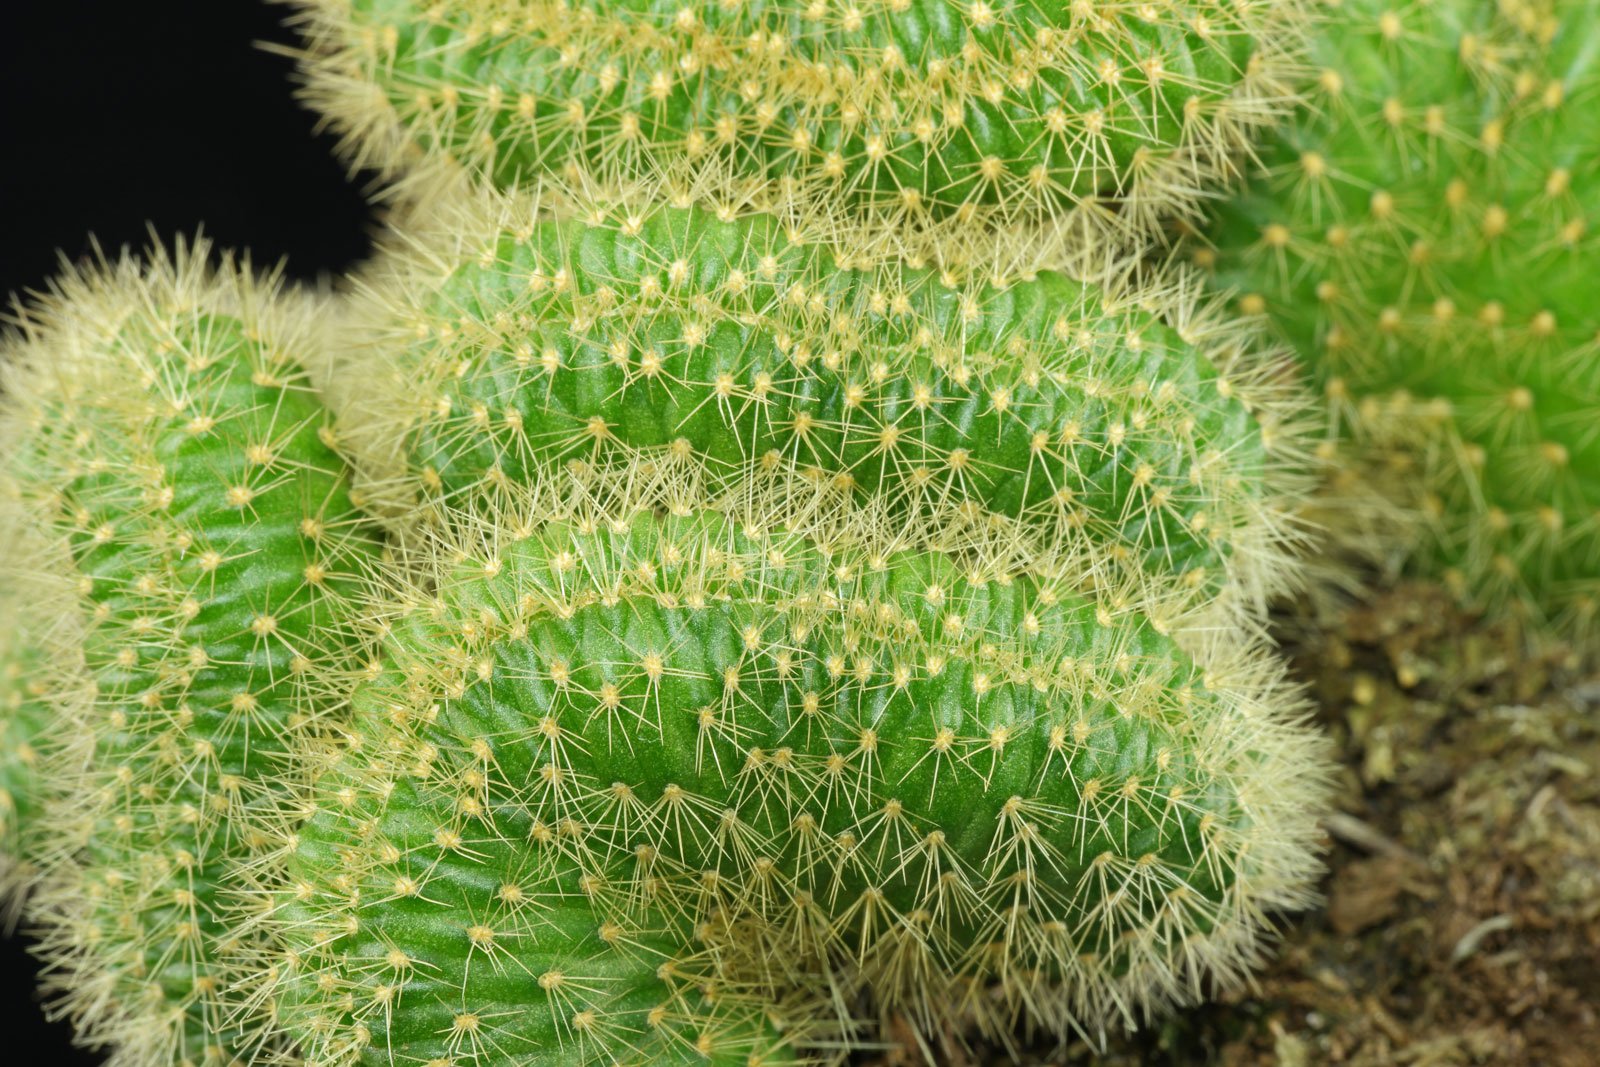 Cleistocactus winteri Cristata